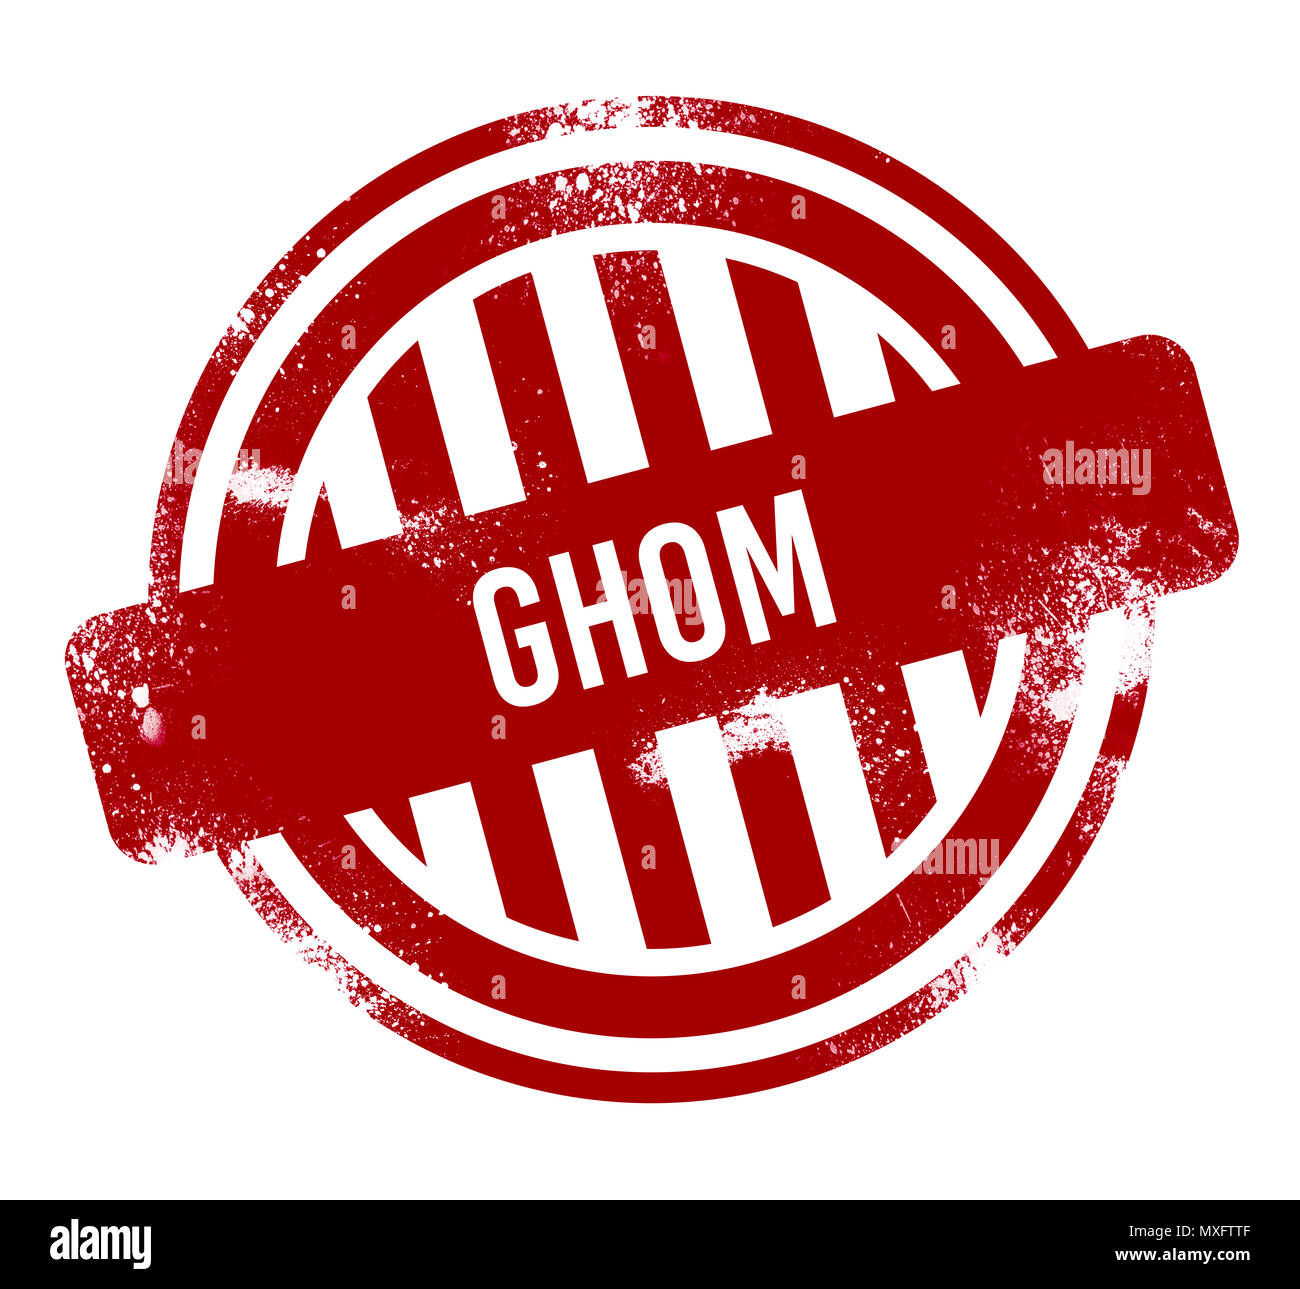 Ghom - Rot grunge-Taste, Stempel Stockfoto